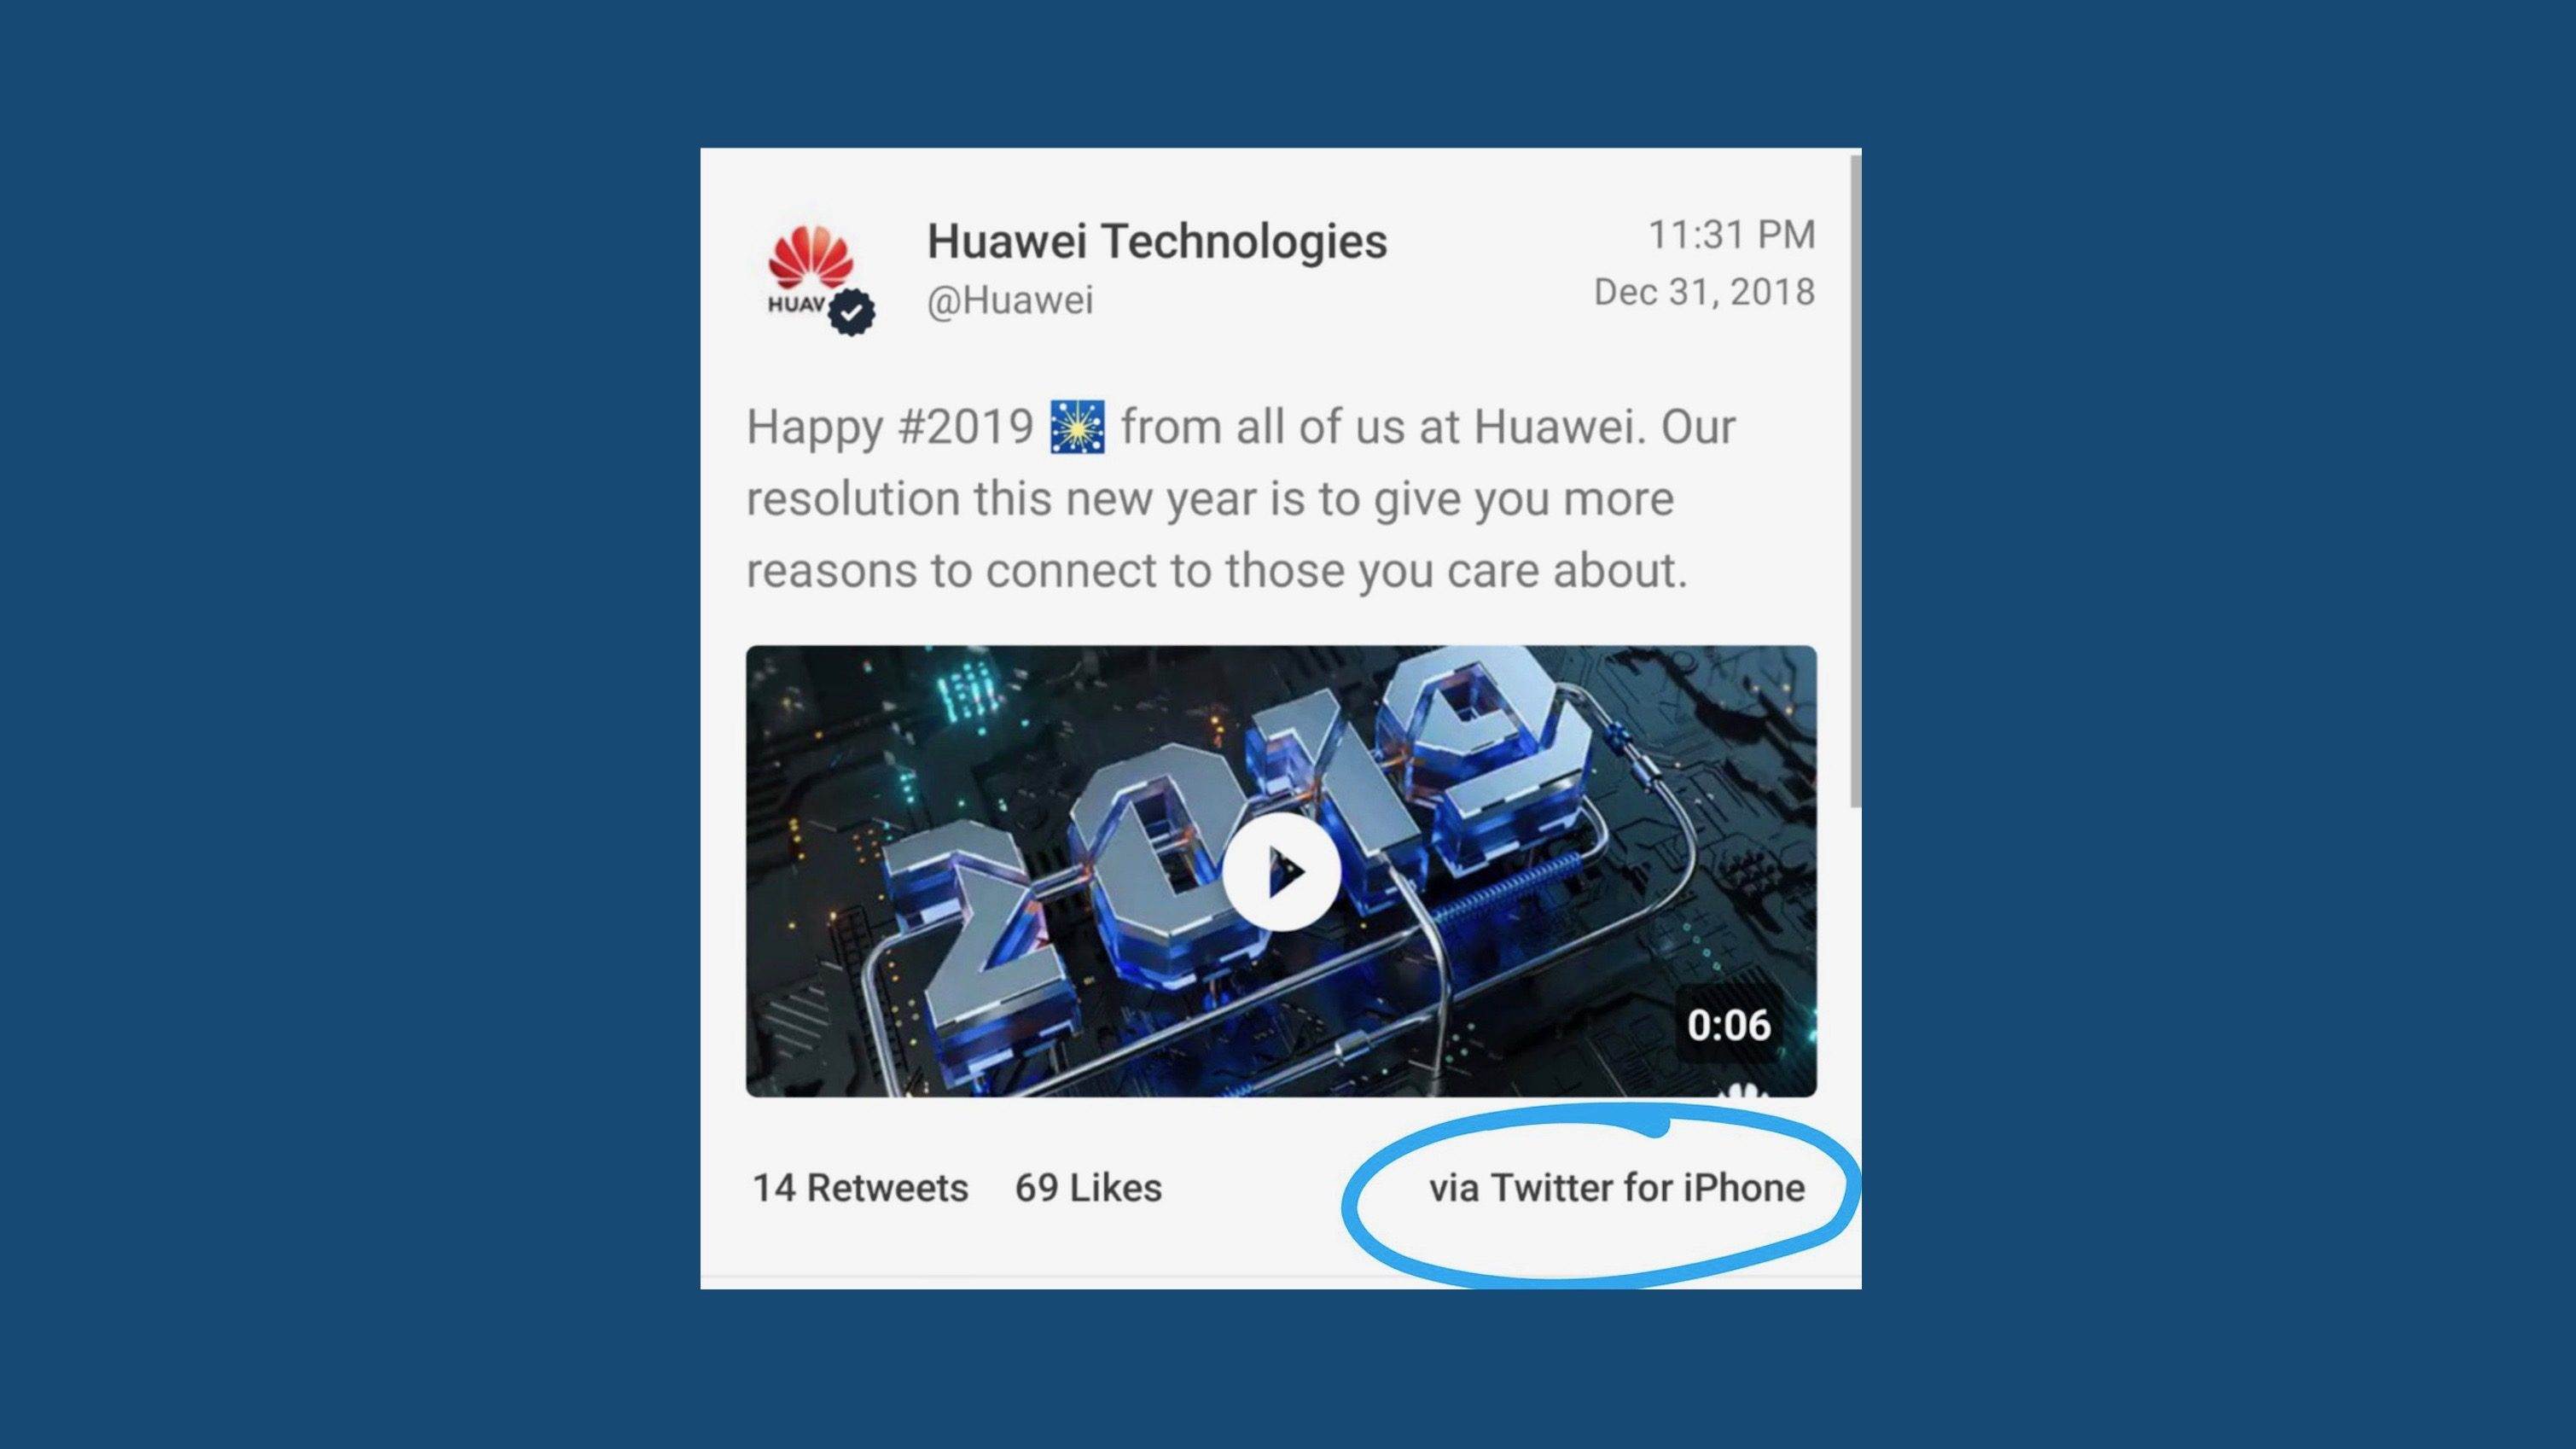 Zobacz w jaki sposób zostali ukarani pracownicy odpowiedzialni za ostatnią wpadkę Huawei?a na Twitterze polecane, ciekawostki wpadka huawei, iPhone, Huawei  Specjaliści od marketingu Huawei po raz kolejny popełnili poważny błąd, życząc wszystkim szczęśliwego Nowego Roku, korzystając z aplikacji Twitter na?. twitter